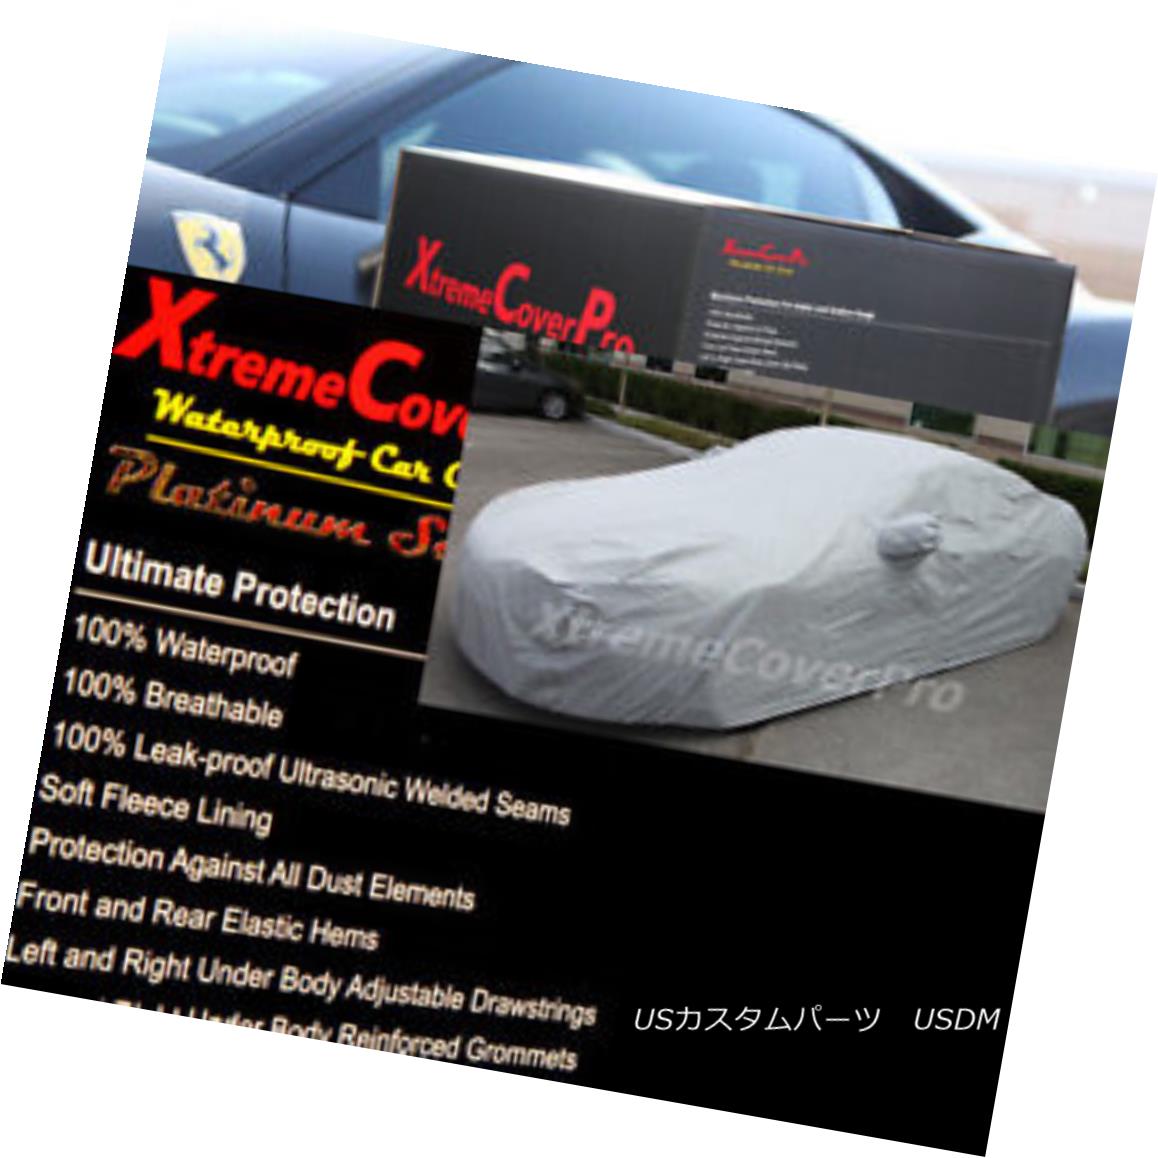 2015 TOYOTA COROLLA Waterproof Car Cover w/Mirror Pockets - Grayカテゴリカーカバー状態新品メーカー車種発送詳細送料一律 1000円（※北海道、沖縄、離島は省く）商品詳細輸入商品の為、英語表記となります。 Condition: New Type: Full Coverage Cover Length (ft.): 181 - 192 inches Fit: Universal Fit Warranty: Limited Lifetime through Manufacturer Material: 180 g per meter^square with cotton Lining Mirror Pocekt: Yes Features: Elastic Hem, Grommet Hem, Non-Abrasive Lining, Waterproof, Water Resistant, Two Side Draw String, Underbody Strap, MIRROR POCKET, Cotton Lining Manufacturer Part Number: Does Not Apply Brand: XTREMECOVERPRO FITMENT: PLEASE REFER TO AUCTION TITLE MATCHES YOUR VEHICLE Primary Color: Gray Color: Gray※以下の注意事項をご理解頂いた上で、ご入札下さい※■海外輸入品の為、NC,NRでお願い致します。■フィッテングや車検対応の有無については、画像と説明文よりお客様の方にてご判断をお願いしております。■USのカスタムパーツは国内の純正パーツを取り外した後、接続コネクタが必ずしも一致するとは限らず、加工が必要な場合がございます。■商品説明文中に英語にて”保障”に関する記載があっても適応はされませんので、ご理解ください。■初期不良（到着より7日以内）のみ保証対象とします。ただし、取り付け後は、保証対象外とします。■海外倉庫から到着した製品を、再度国内で検品を行い、日本郵便または佐川急便にて発送となります。■お届けまでには、2〜3週間程頂いております。ただし、天候次第で多少遅れが発生する場合もあります。■商品落札後のお客様のご都合によるキャンセルはお断りしておりますが、商品落札金額の30％の手数料をいただいた場合のみお受けいたします。■他にもUSパーツを多数出品させて頂いておりますので、ご覧頂けたらと思います。■USパーツの輸入代行も行っておりますので、ショップに掲載されていない商品でもお探しする事が可能です!!お気軽にお問い合わせ下さい。&nbsp;